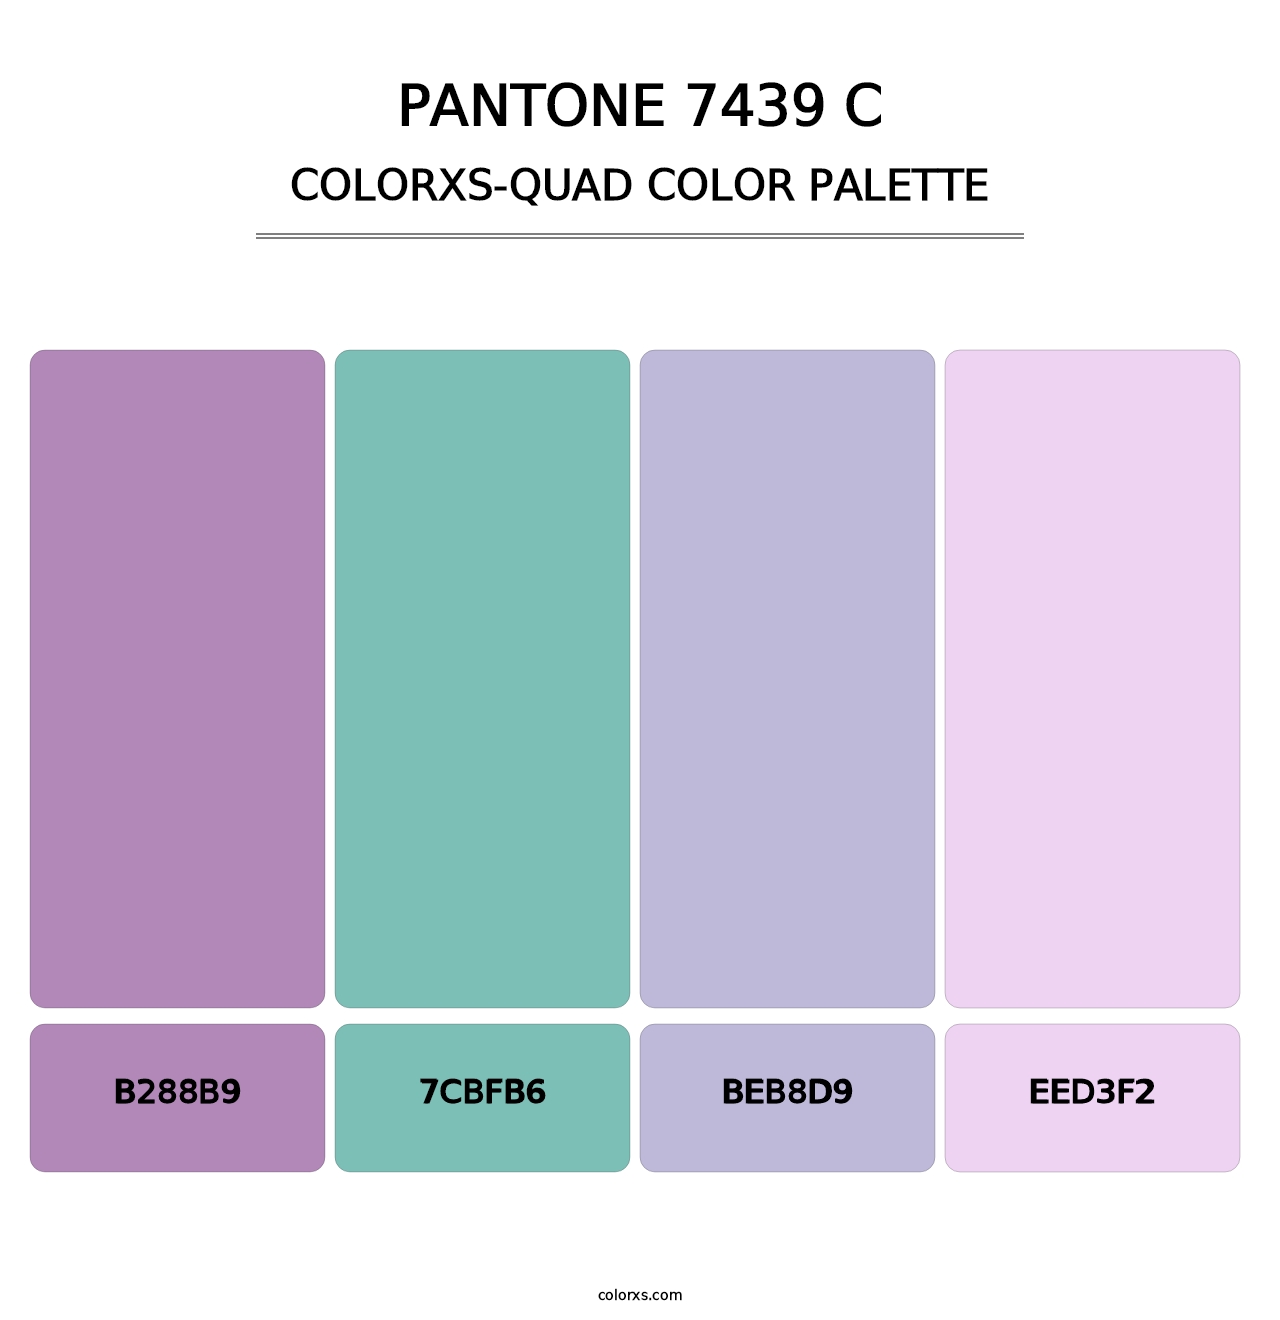 PANTONE 7439 C - Colorxs Quad Palette